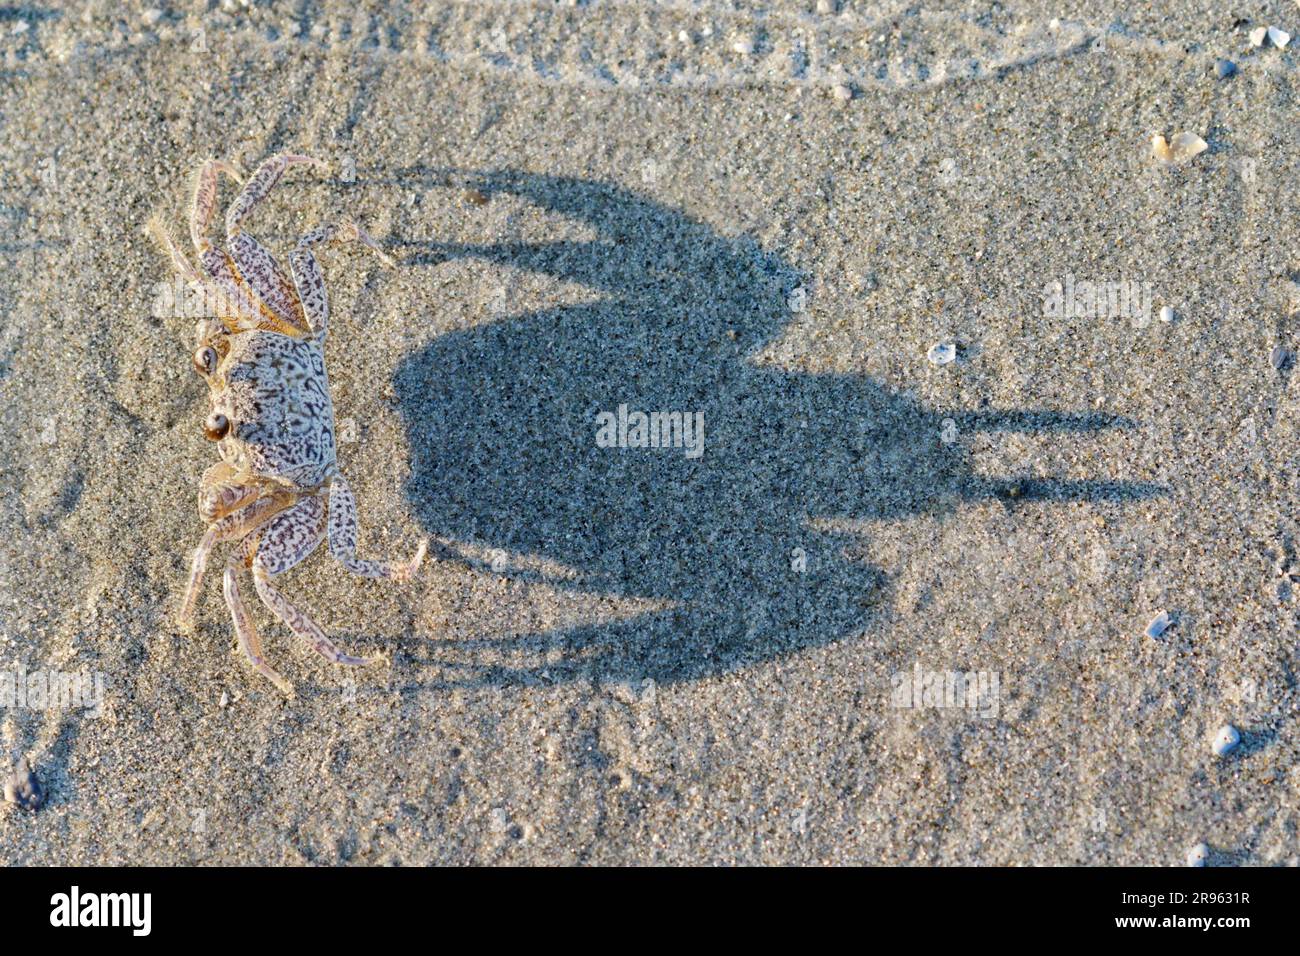 Am Ozeanstrand Galveston, Texas, gibt es junge Geisterkrabben oder Sandkrabben (Ocypode quadrata) mit ihren Schatten auf dem Sand (neutrale Tageslichtfarben). Stockfoto